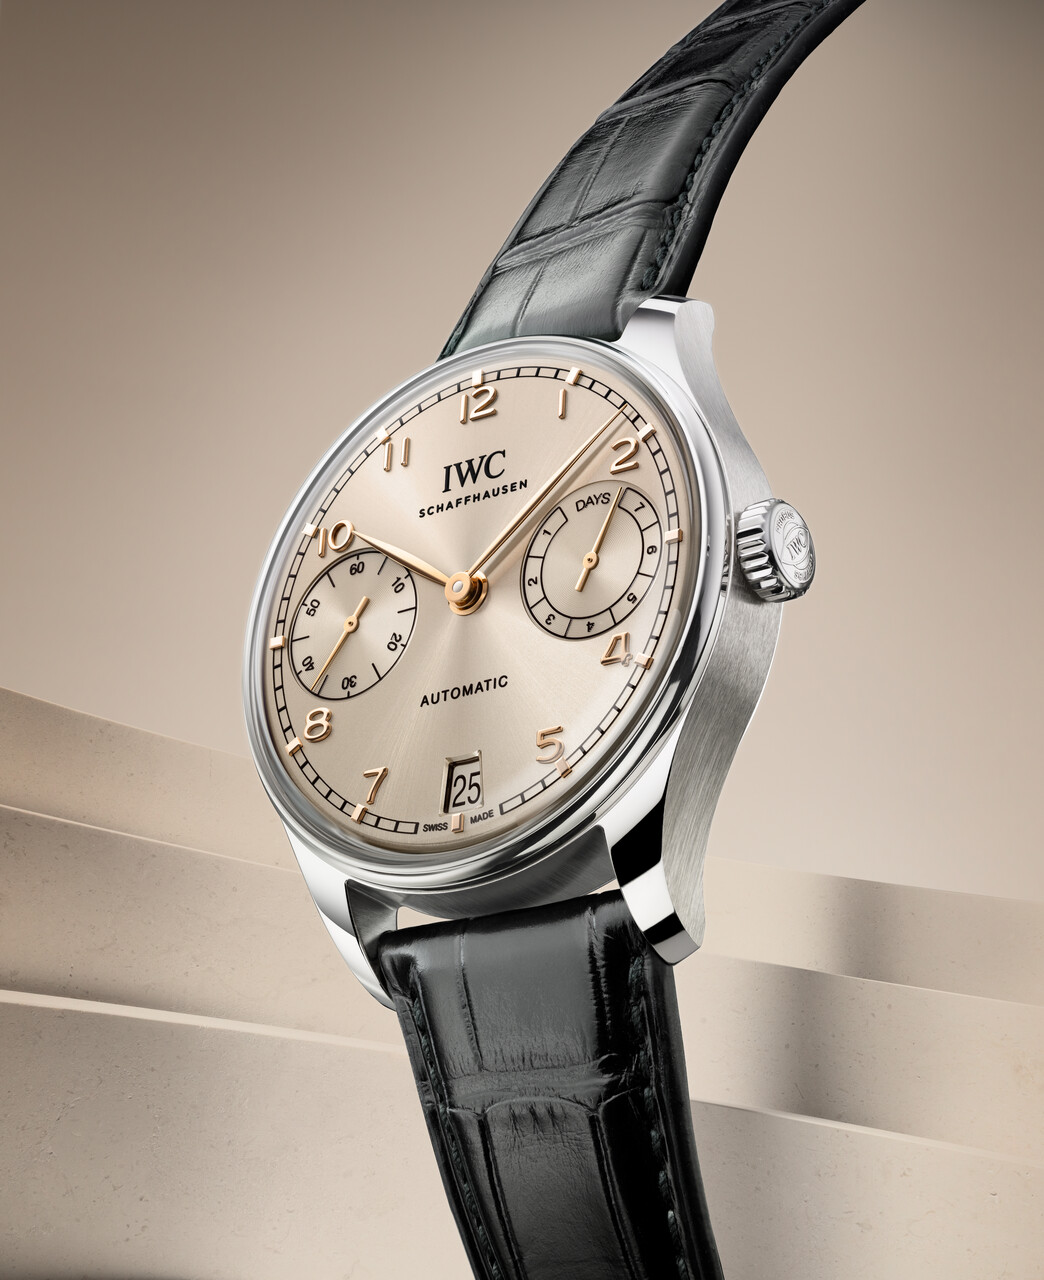  IWC, Schauffhausen, Watches & Wonders, relojes